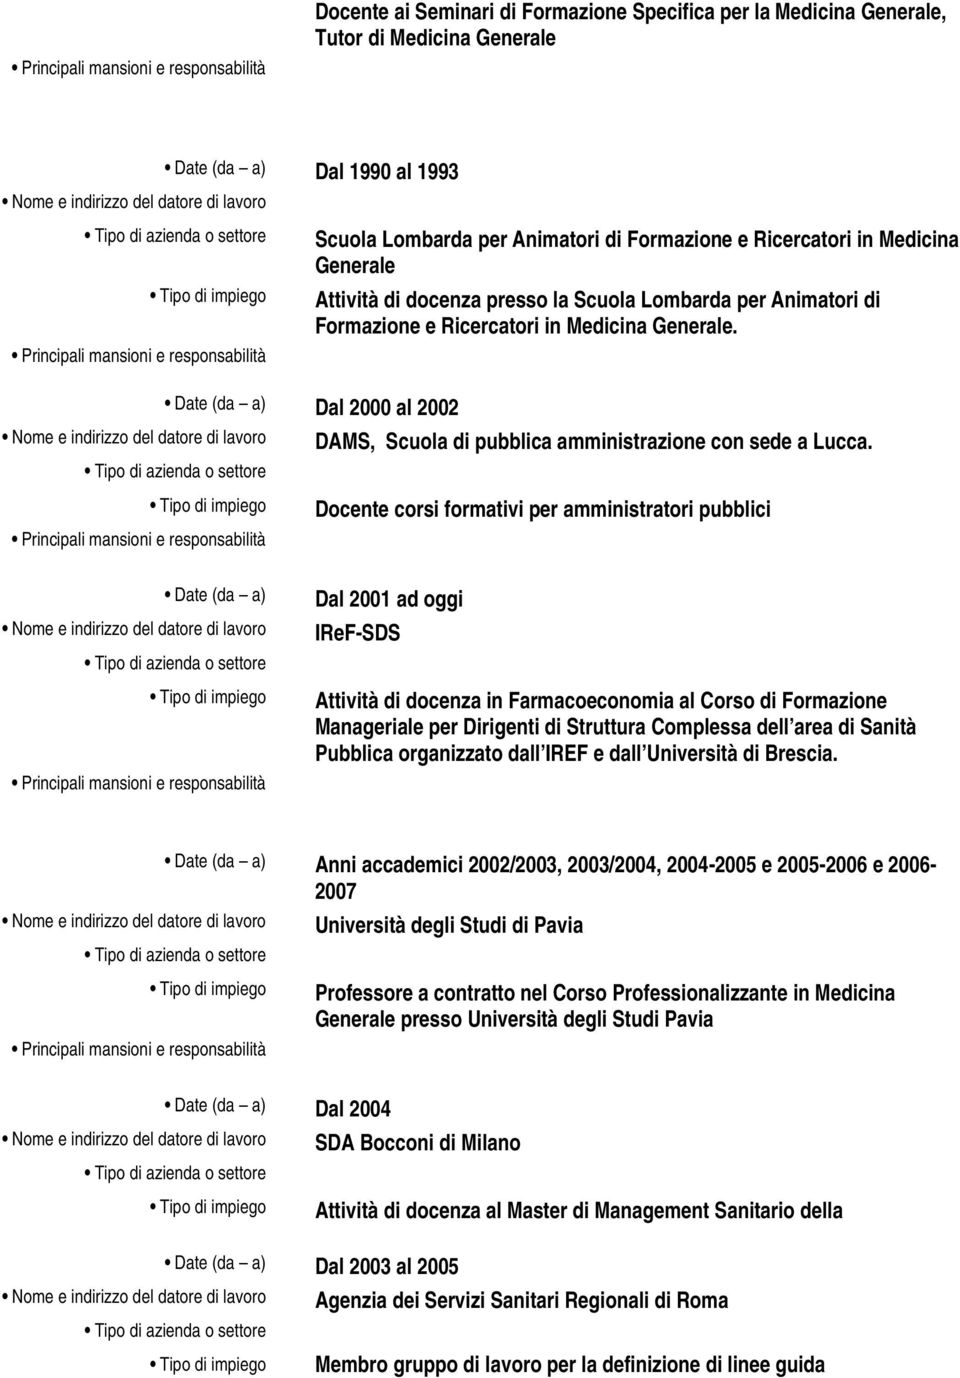 Date (da a) Dal 2000 al 2002 Principali mansioni e responsabilità DAMS, Scuola di pubblica amministrazione con sede a Lucca.